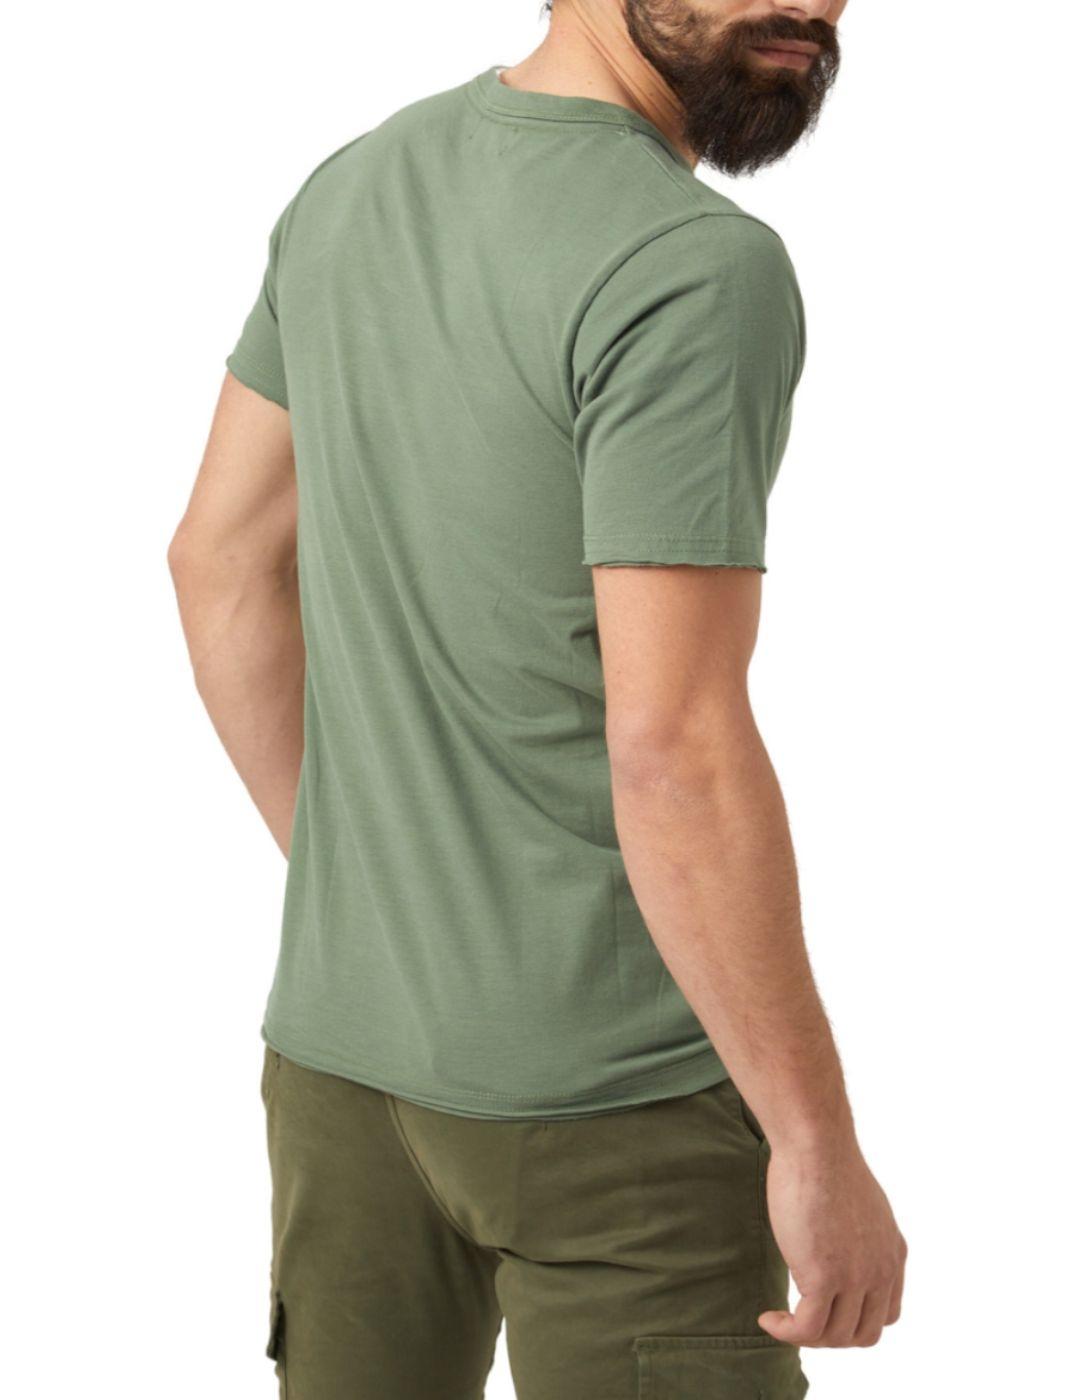 Camiseta Altona verde oscuro para hombre -b